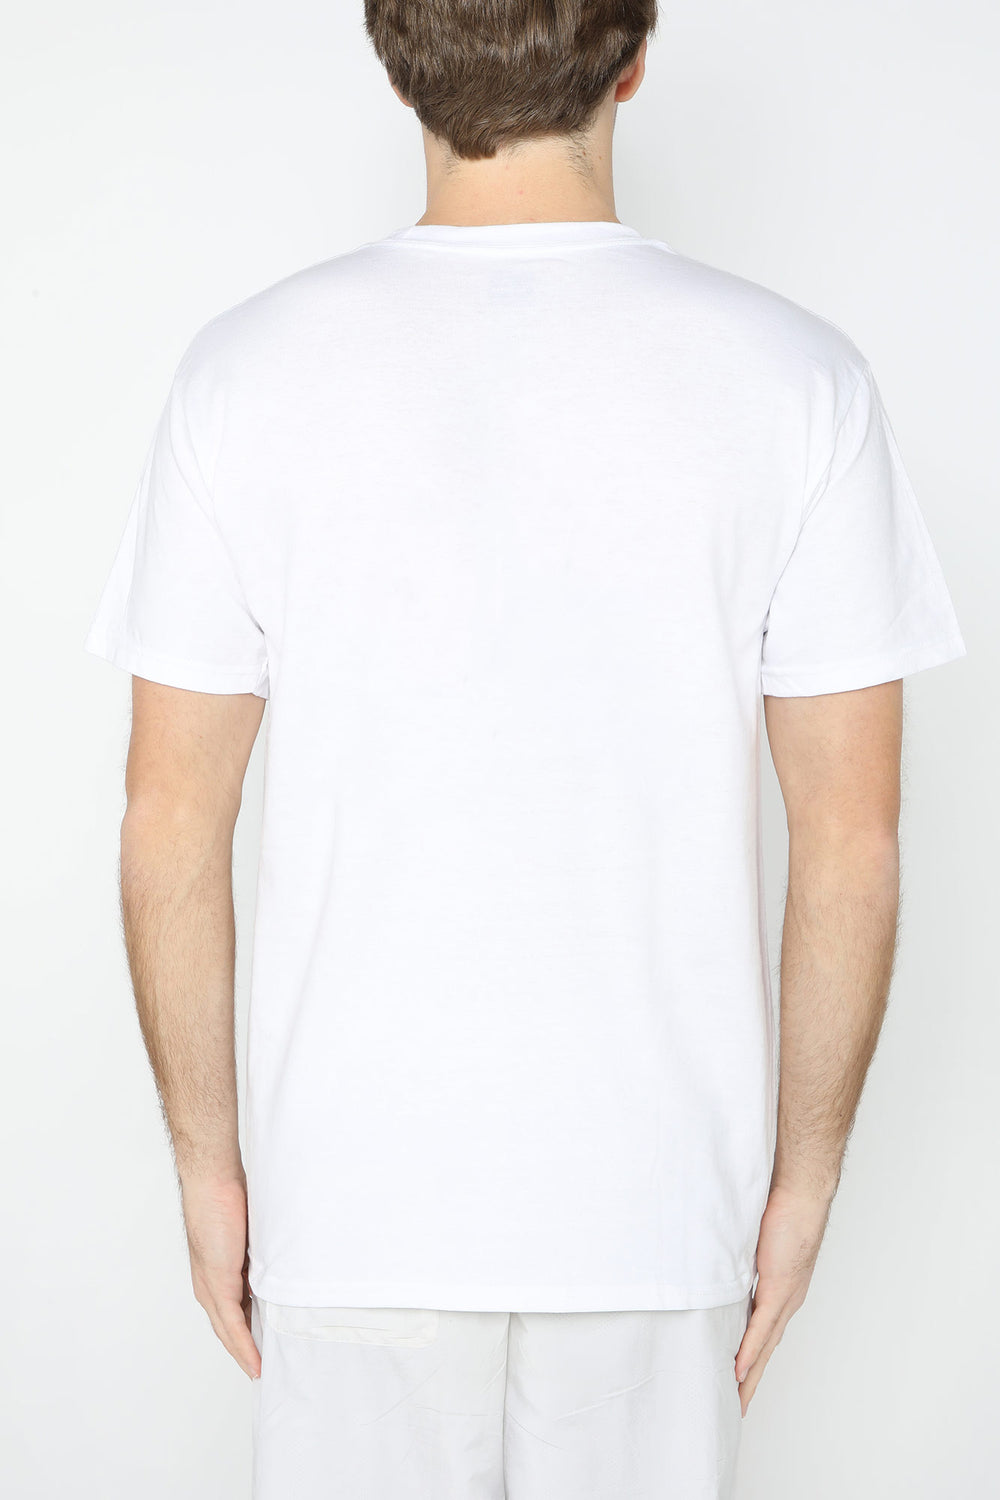 Thrasher White Skate Mag T-Shirt White